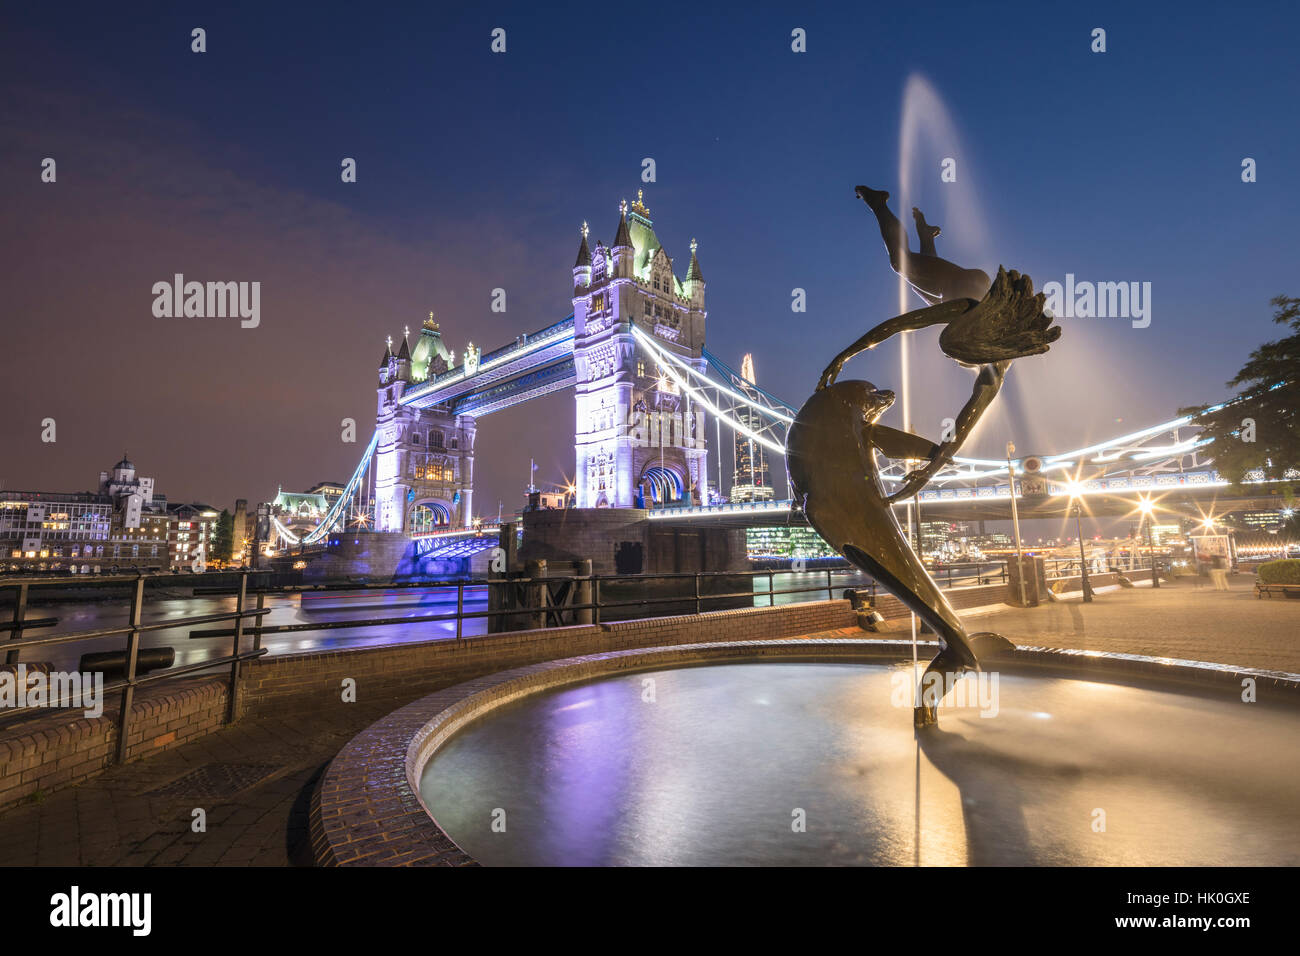 La ragazza con una fontana dei Delfini telai Tower Bridge si riflette nel fiume il Tamigi di notte, Londra, Inghilterra, Regno Unito Foto Stock